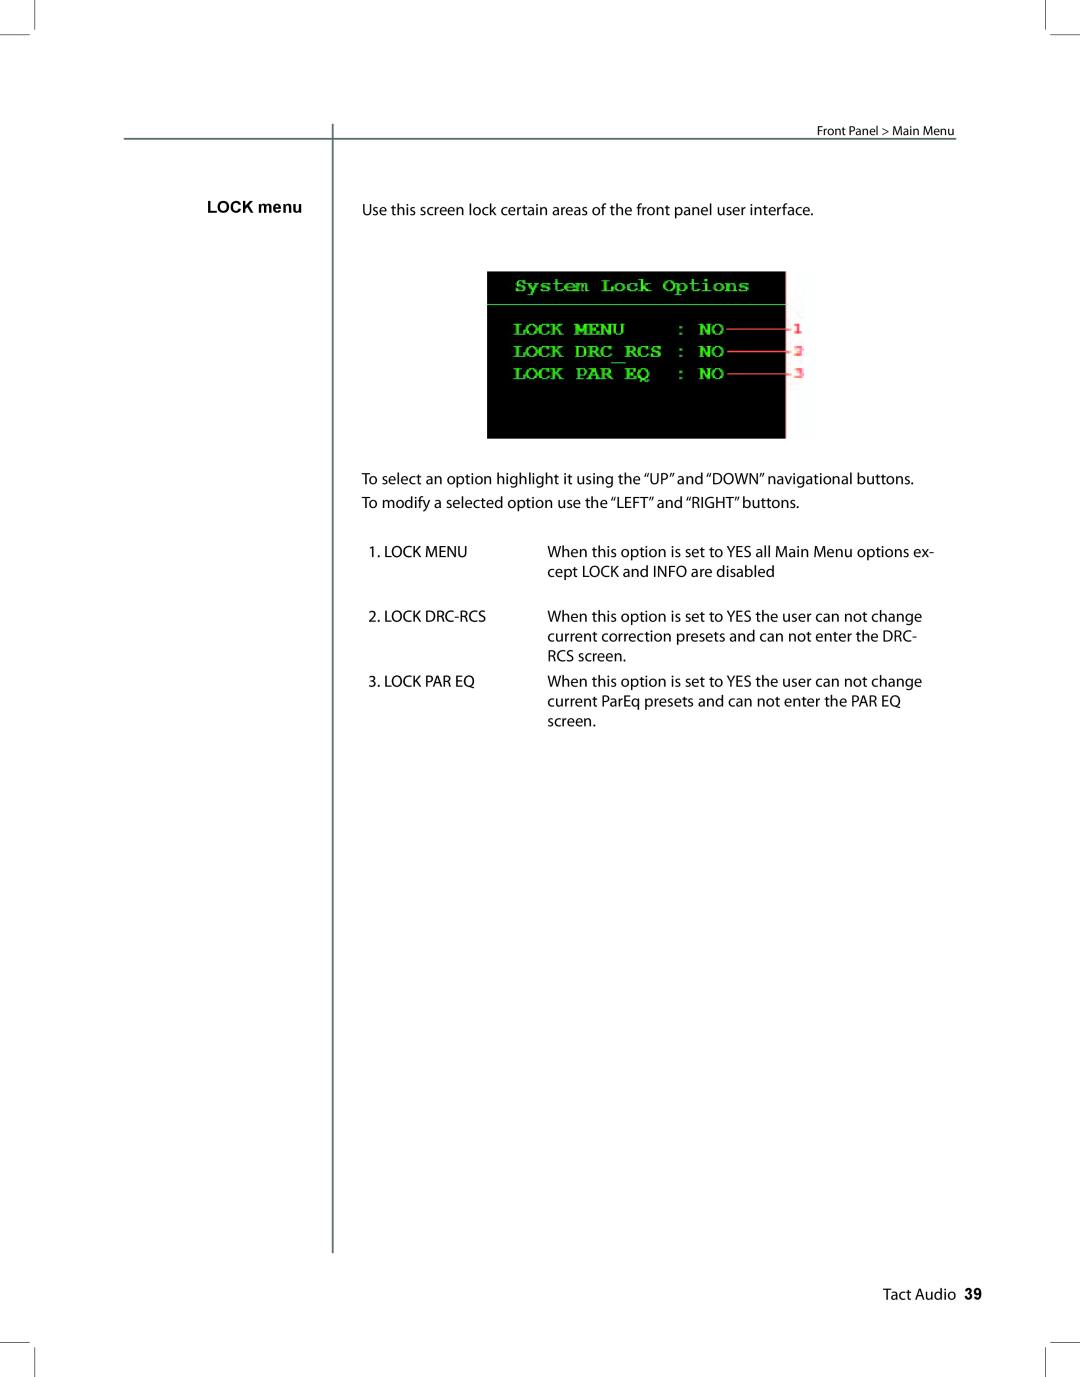 TacT Audio RCS 2.2 XP owner manual LOCK menu 